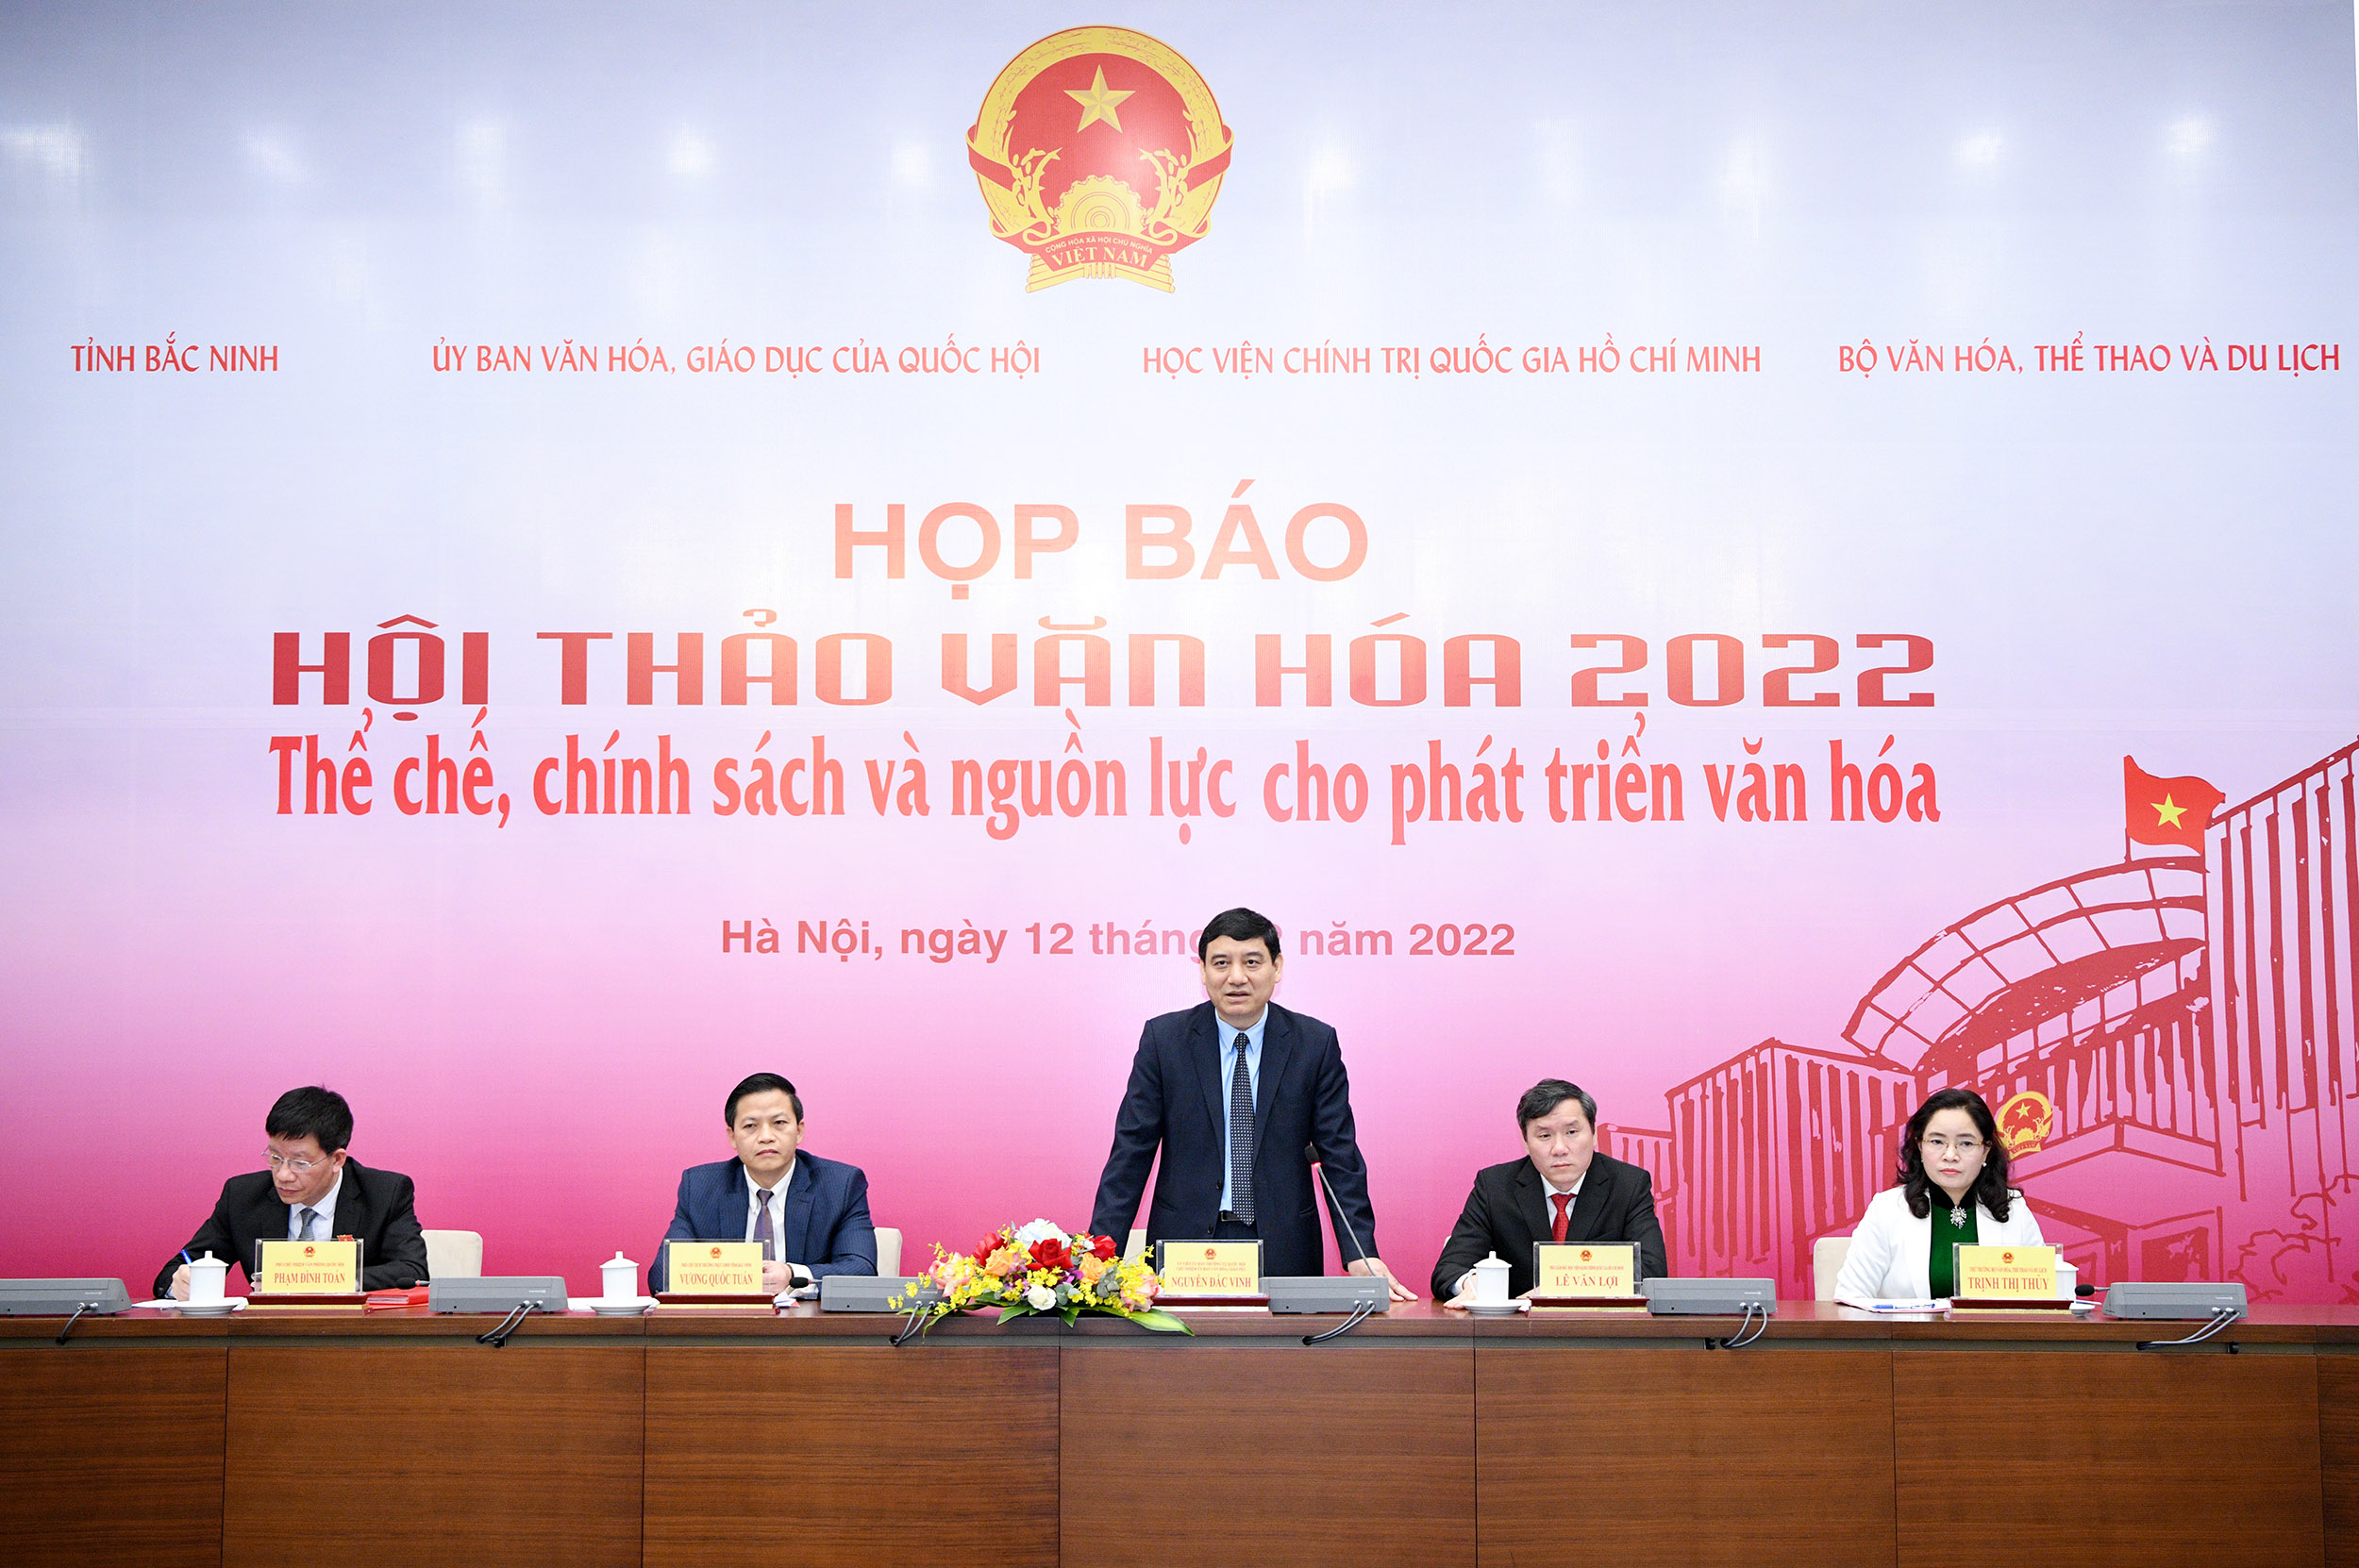 Hội thảo Văn hóa 2022: Diễn đàn lớn nhằm tháo gỡ "điểm nghẽn" trong lĩnh vực văn hóa - 1